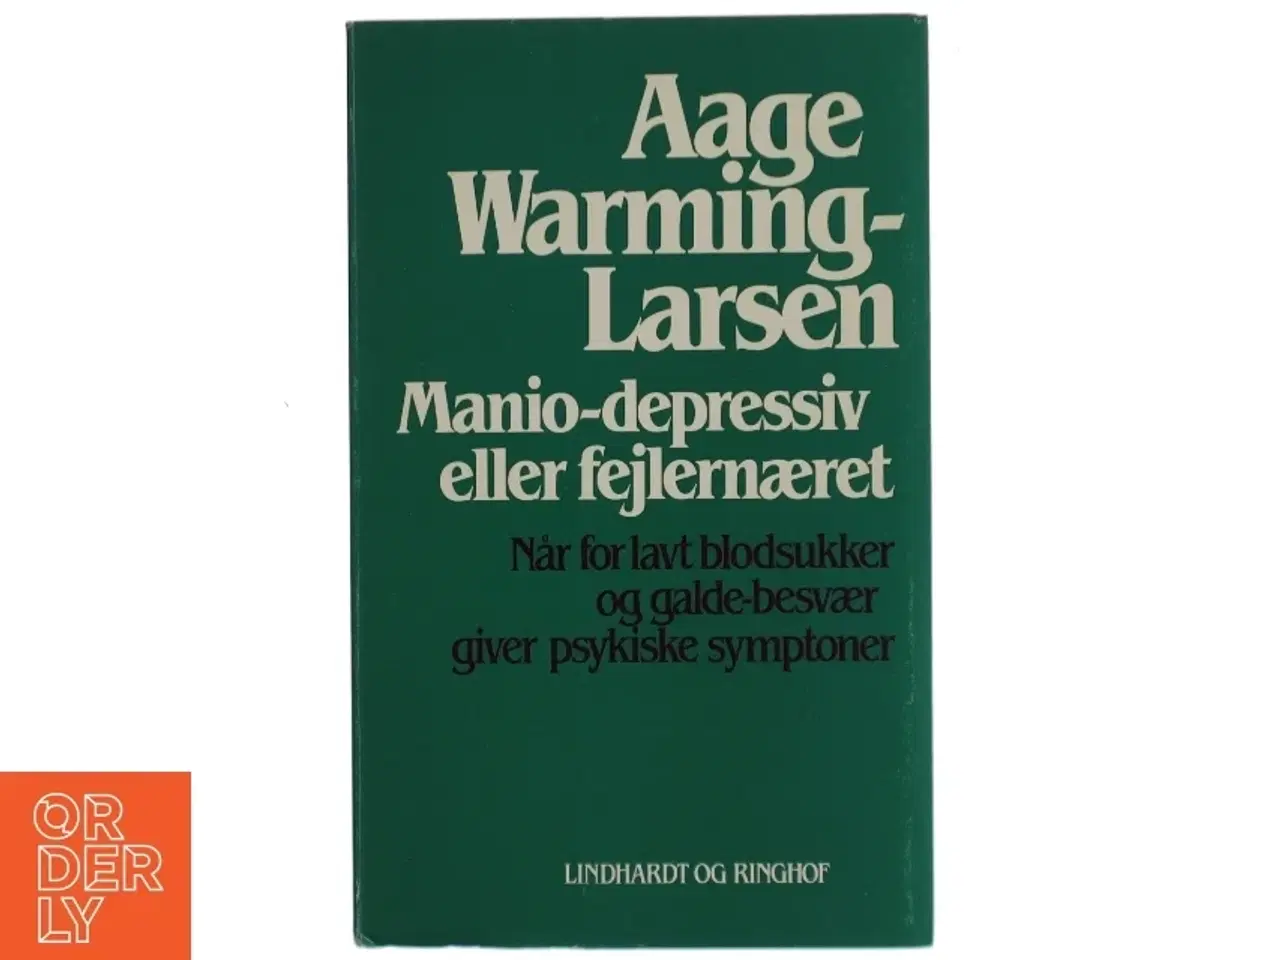 Billede 1 - Manio-depressiv eller fejlernæret af Aage Warming-Larsen (Bog) fra Lindhardt og Ringhof